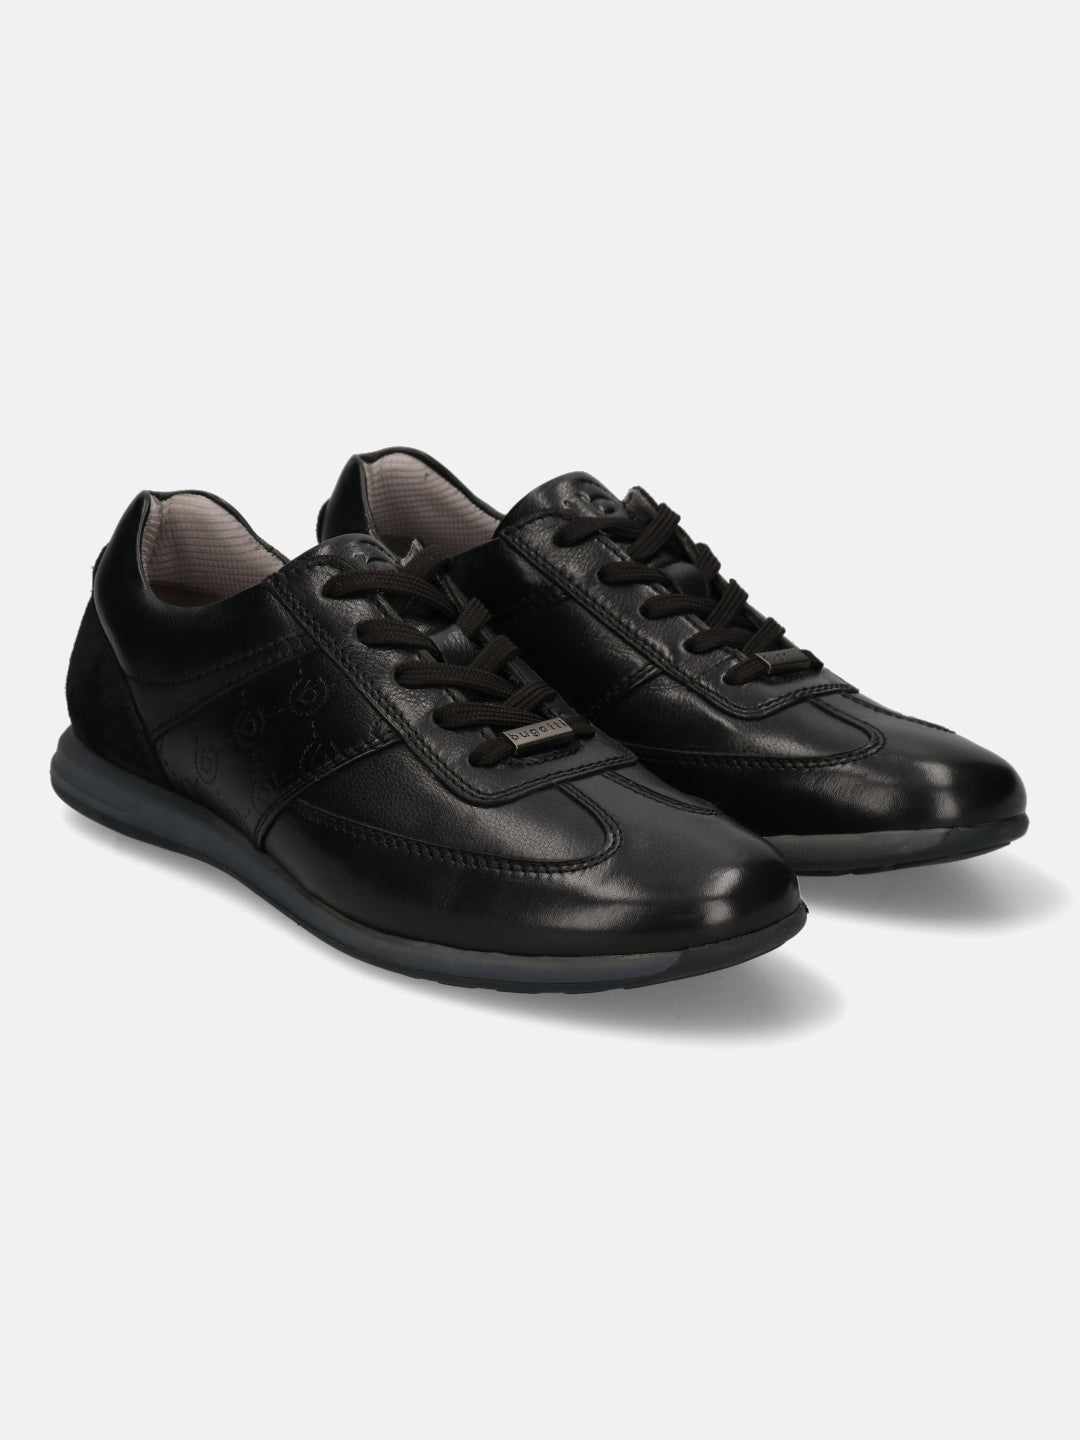 Thorello Black Sneakers - Bugatti Shoes – bugatti Shoes India